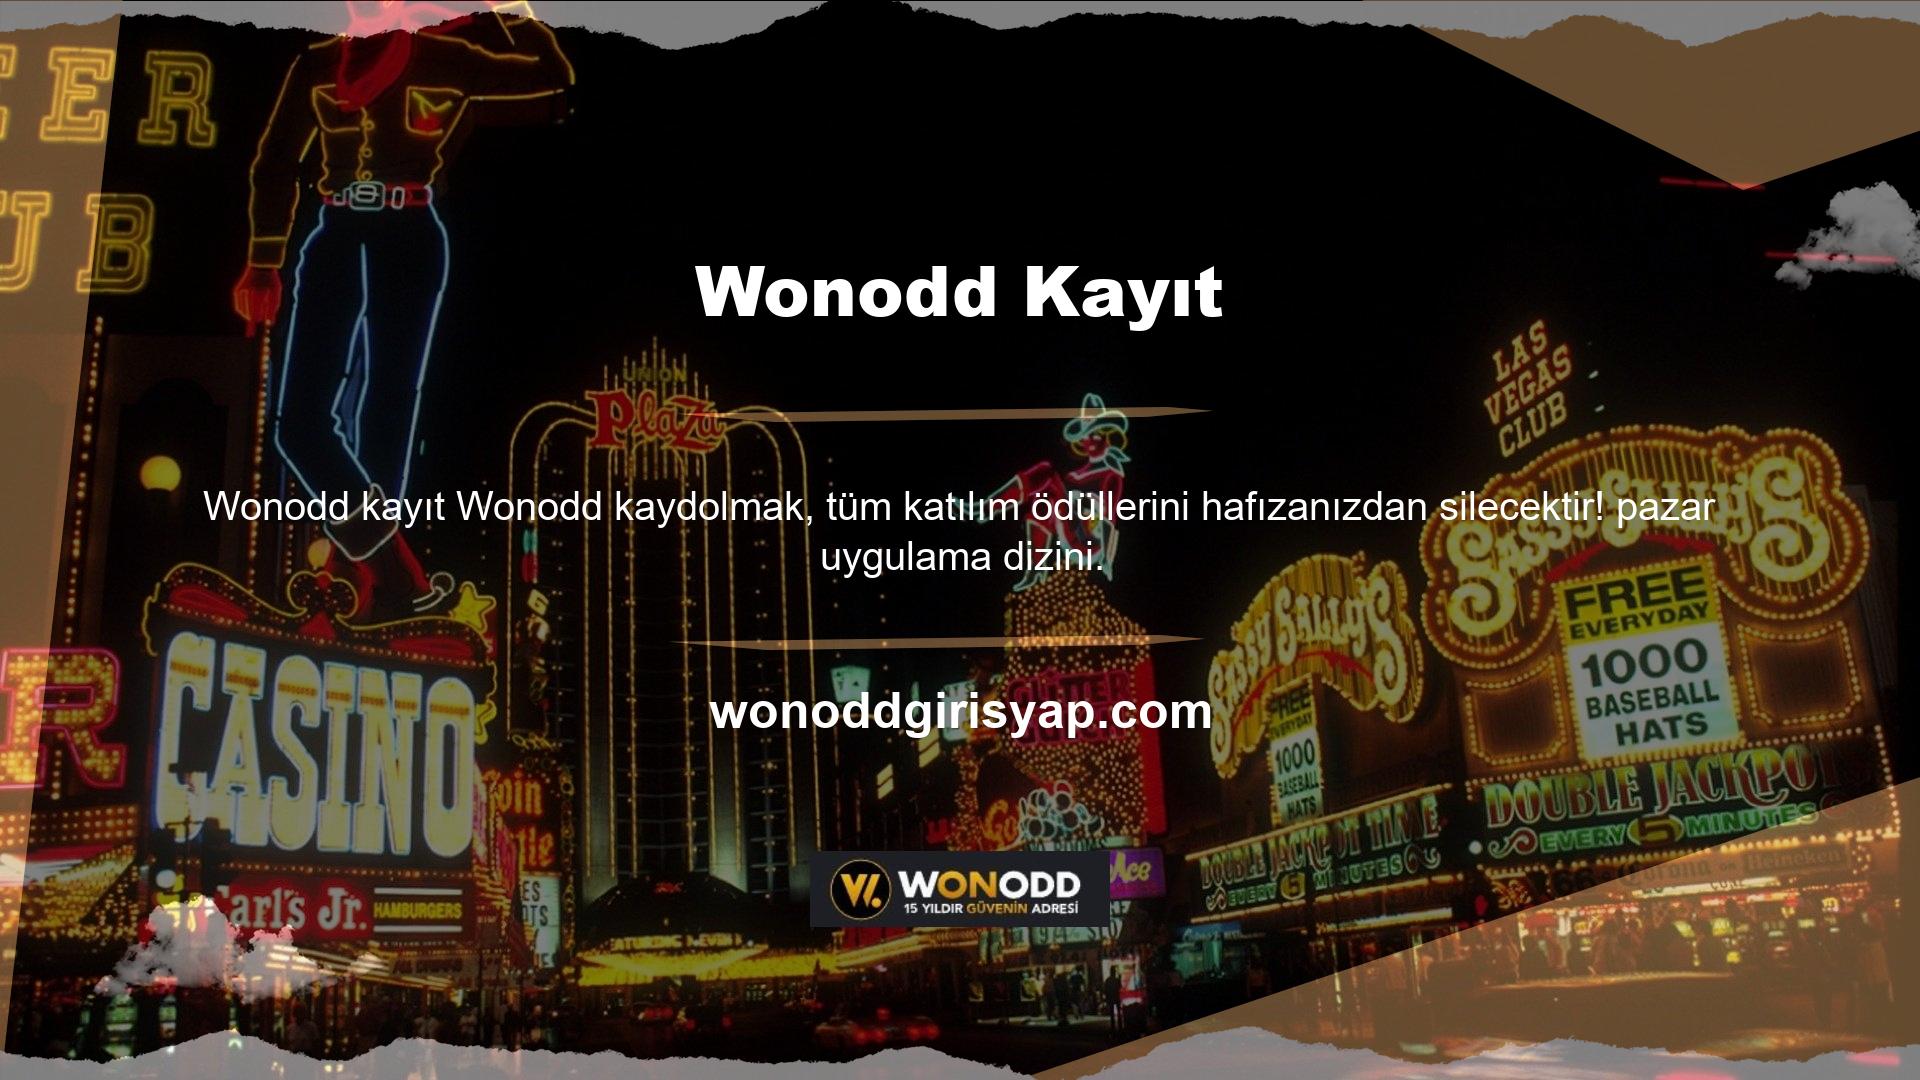 Wonodd Live TV ile Türkiye'nin birçok yerinde tüm spor aktivitelerini cebinizden ödemeden yaşayabilirsiniz